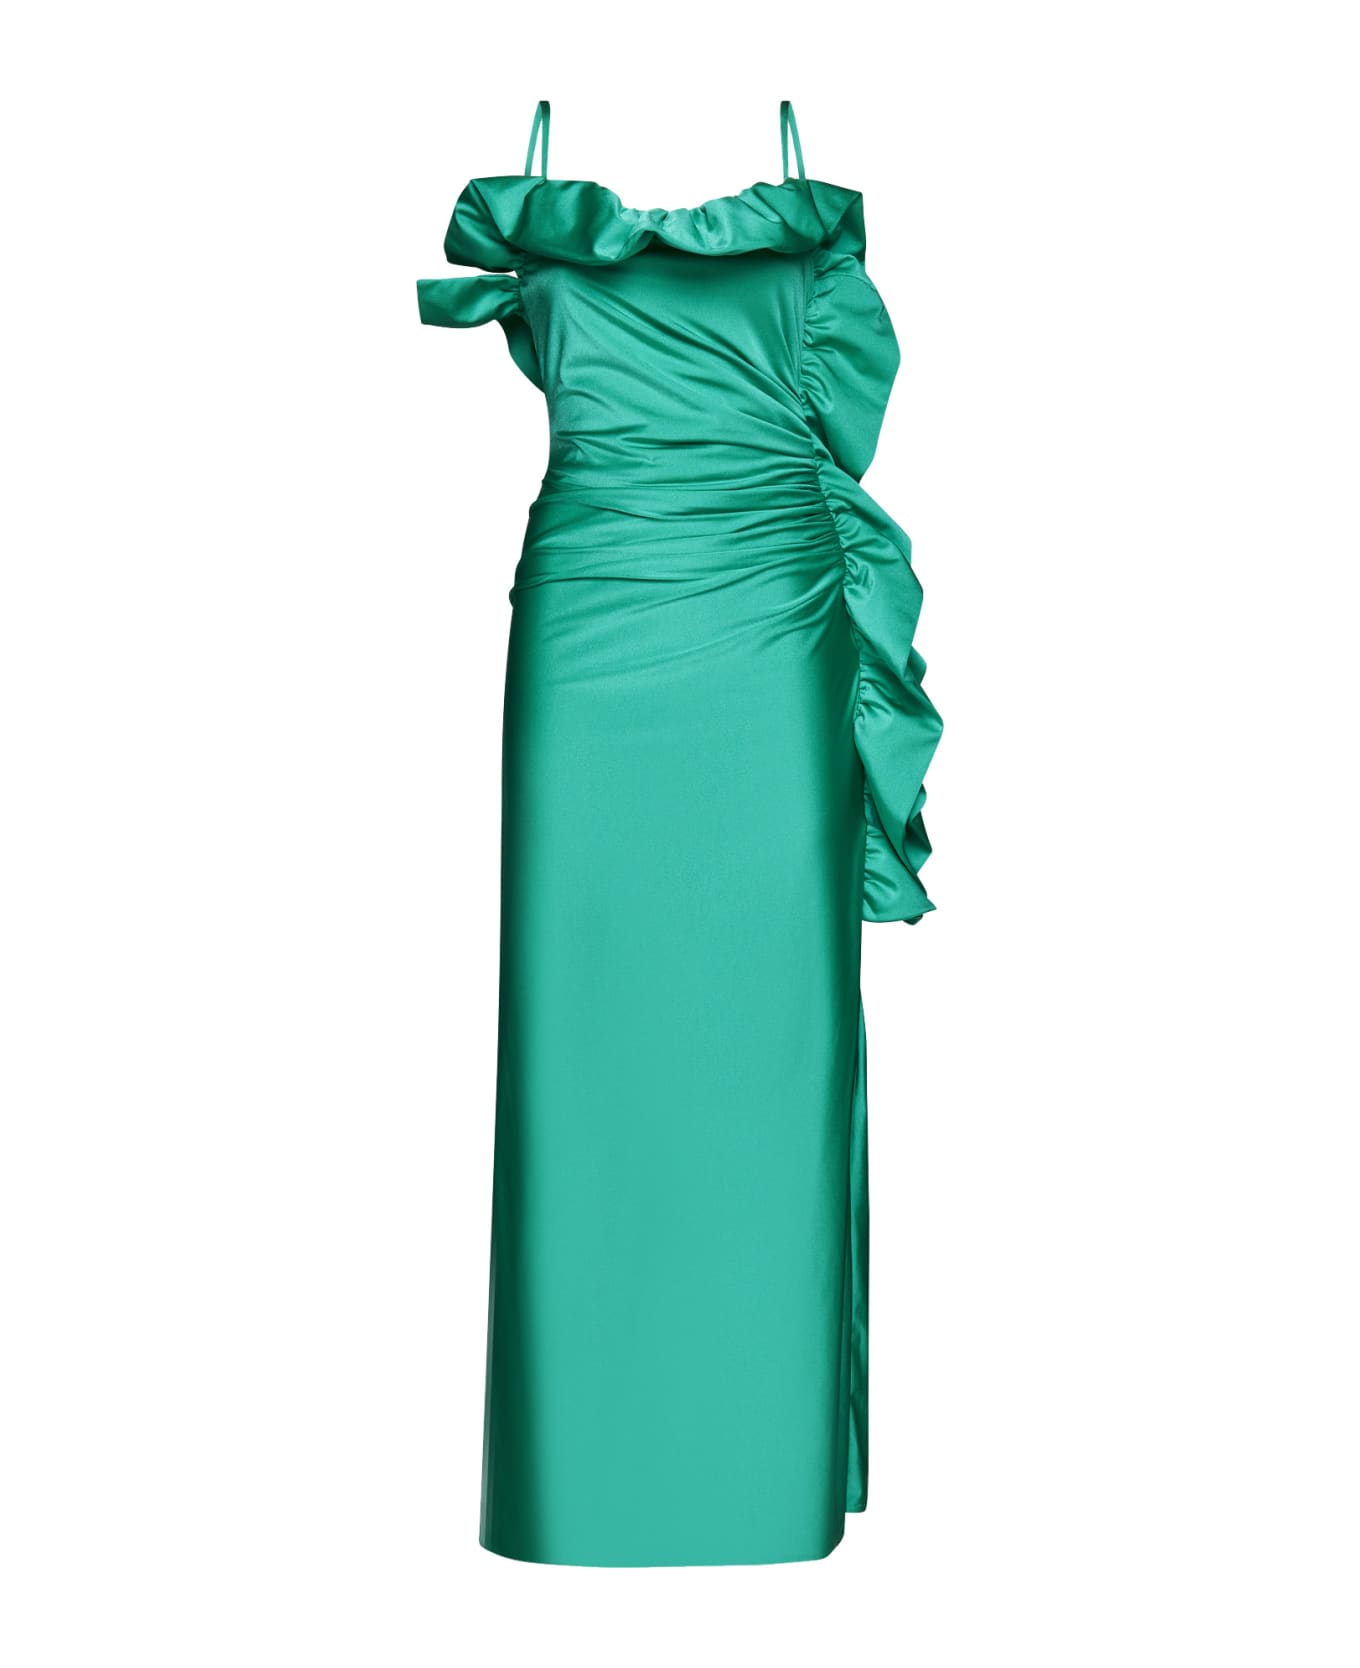 Parosh Dress - Verde smeraldo